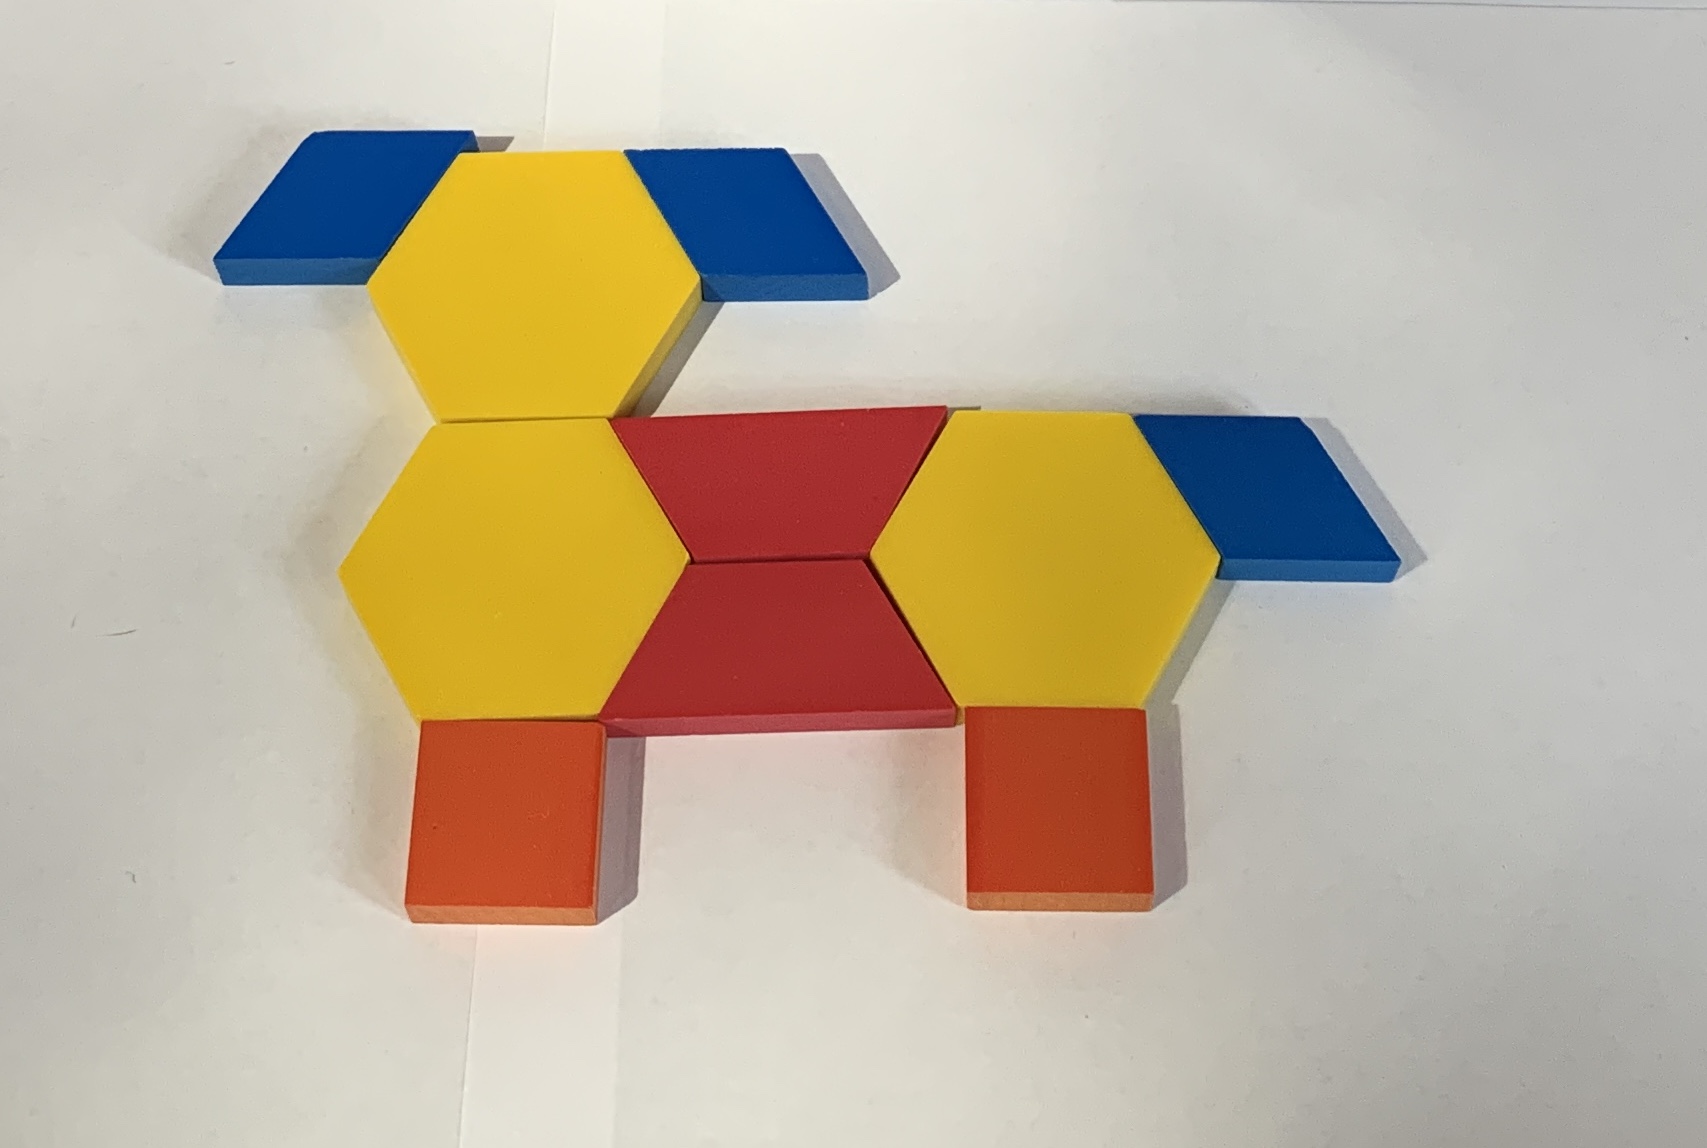 Pattern block design, dog. Yellow, 3. Red, 2. Blue, 3. Orange, 2.